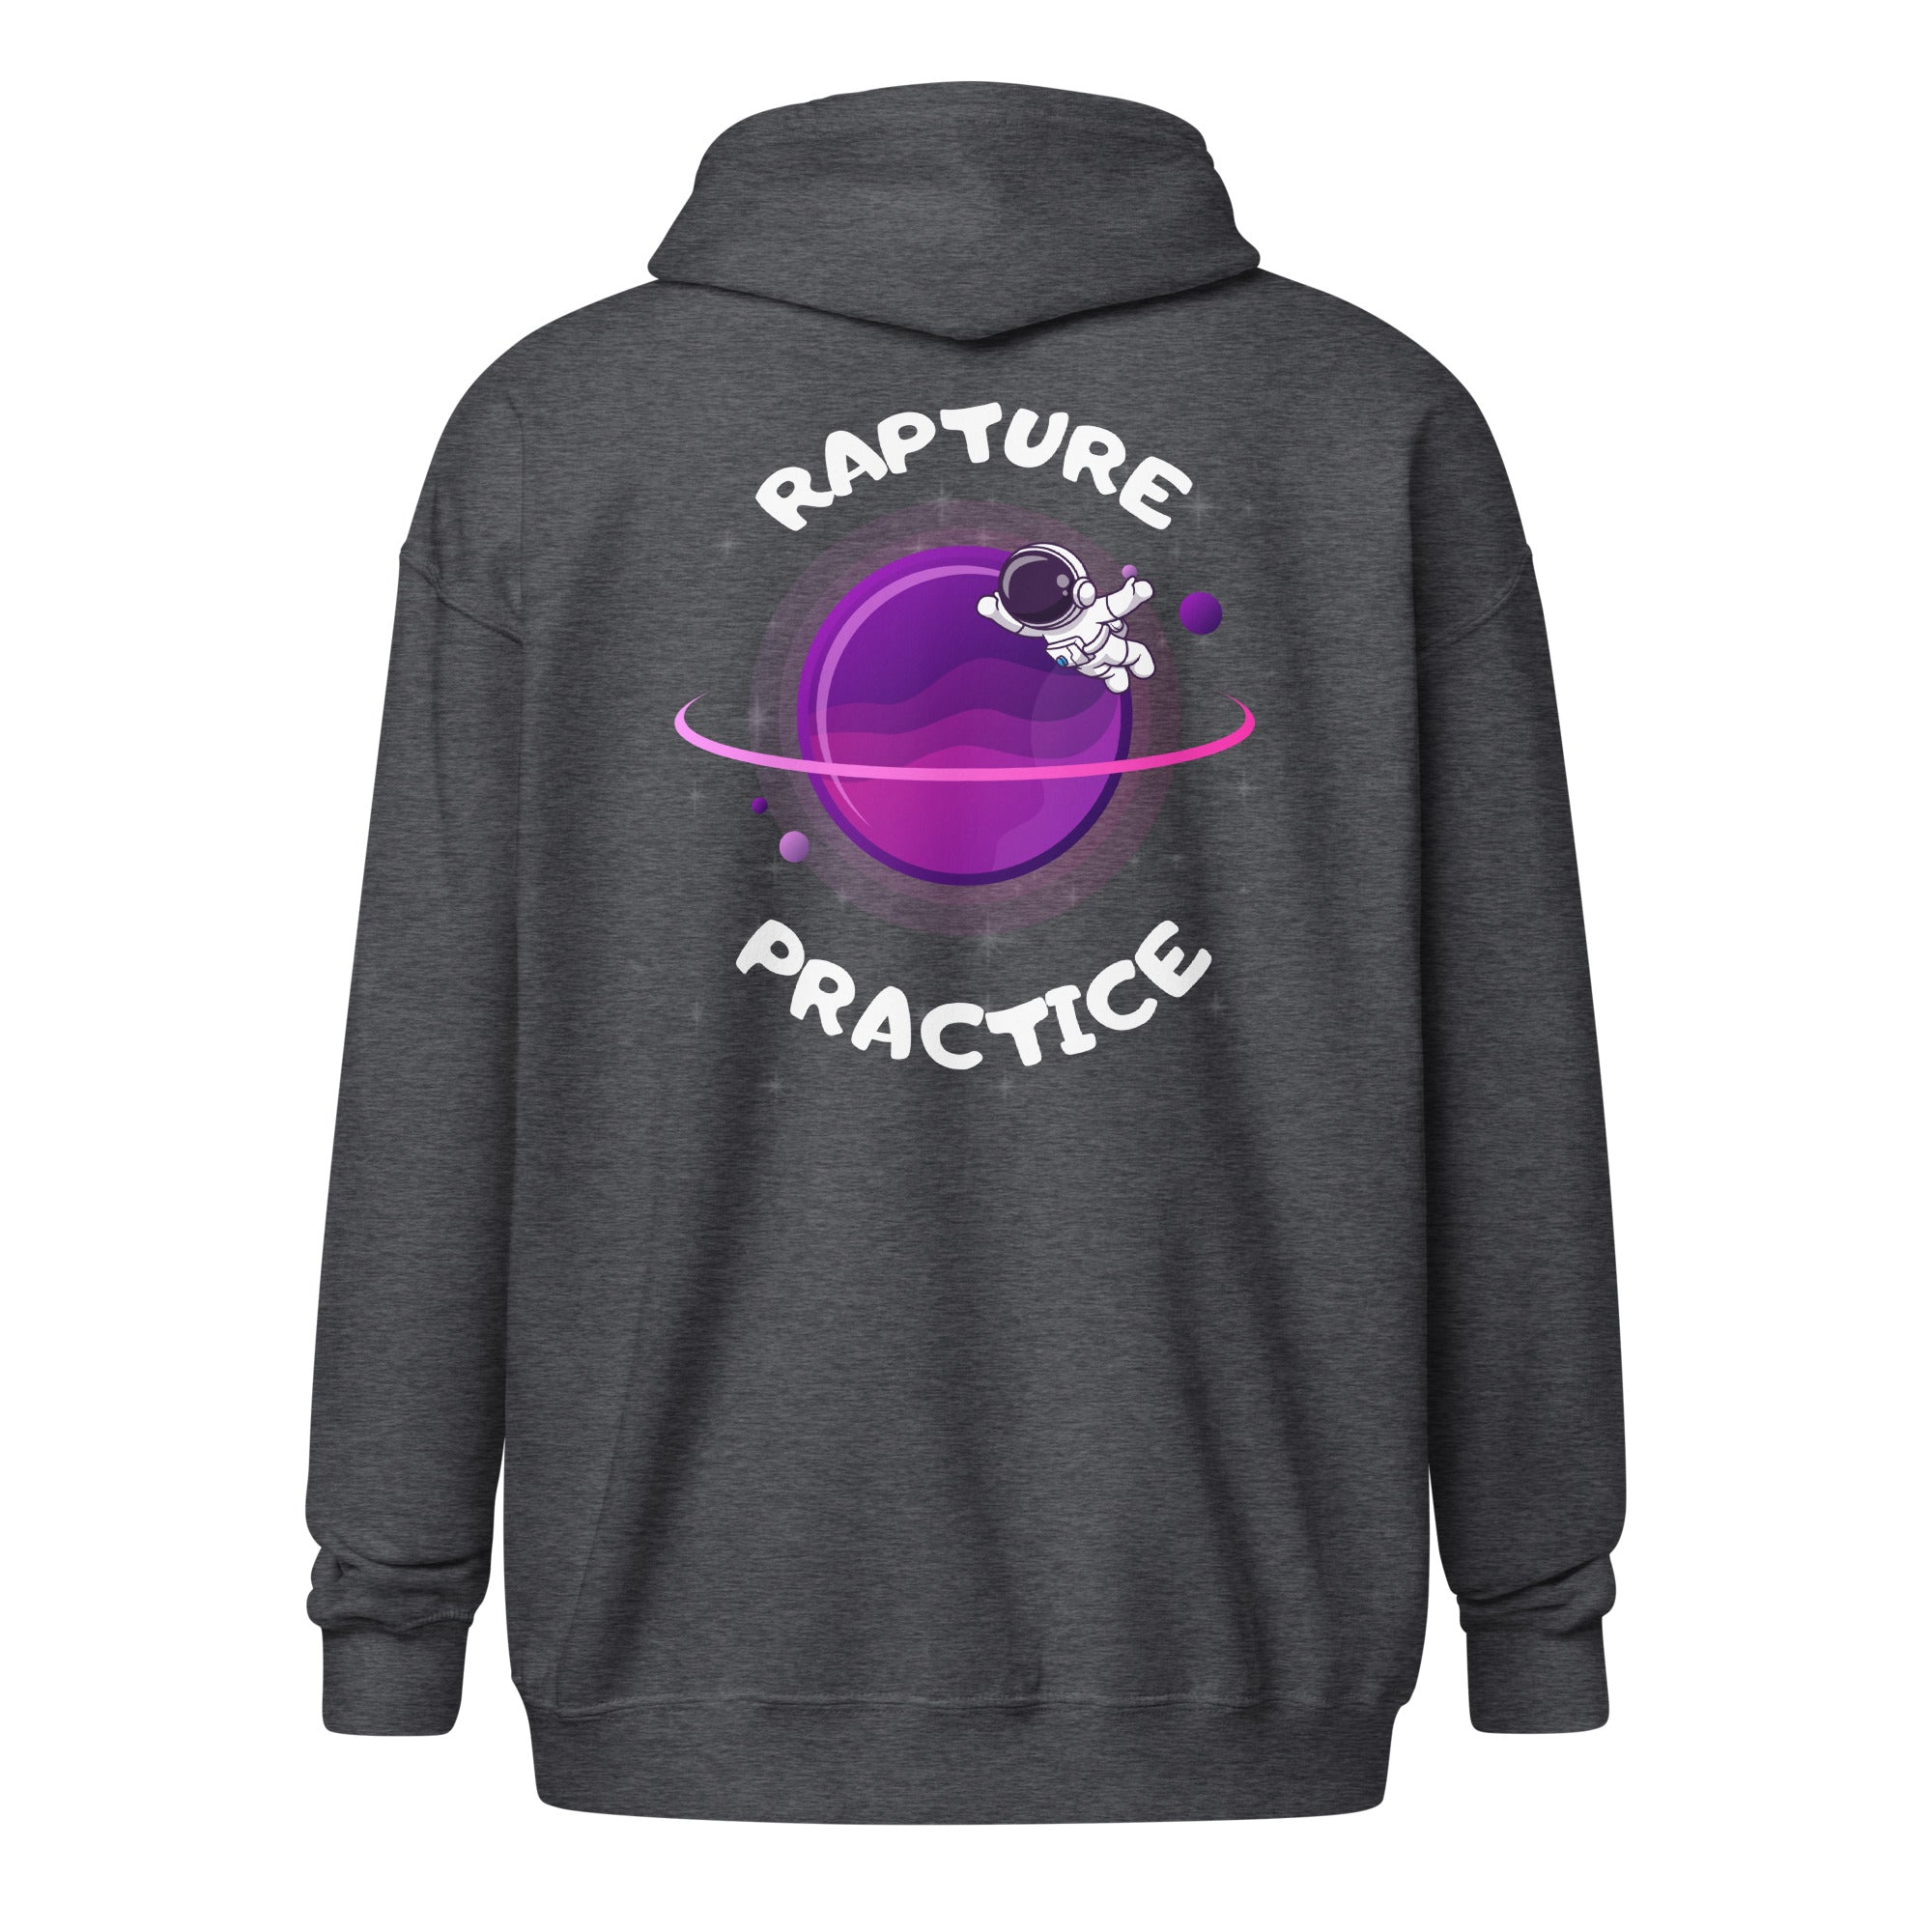 Rapture Practice Unisex heavy blend zip hoodie